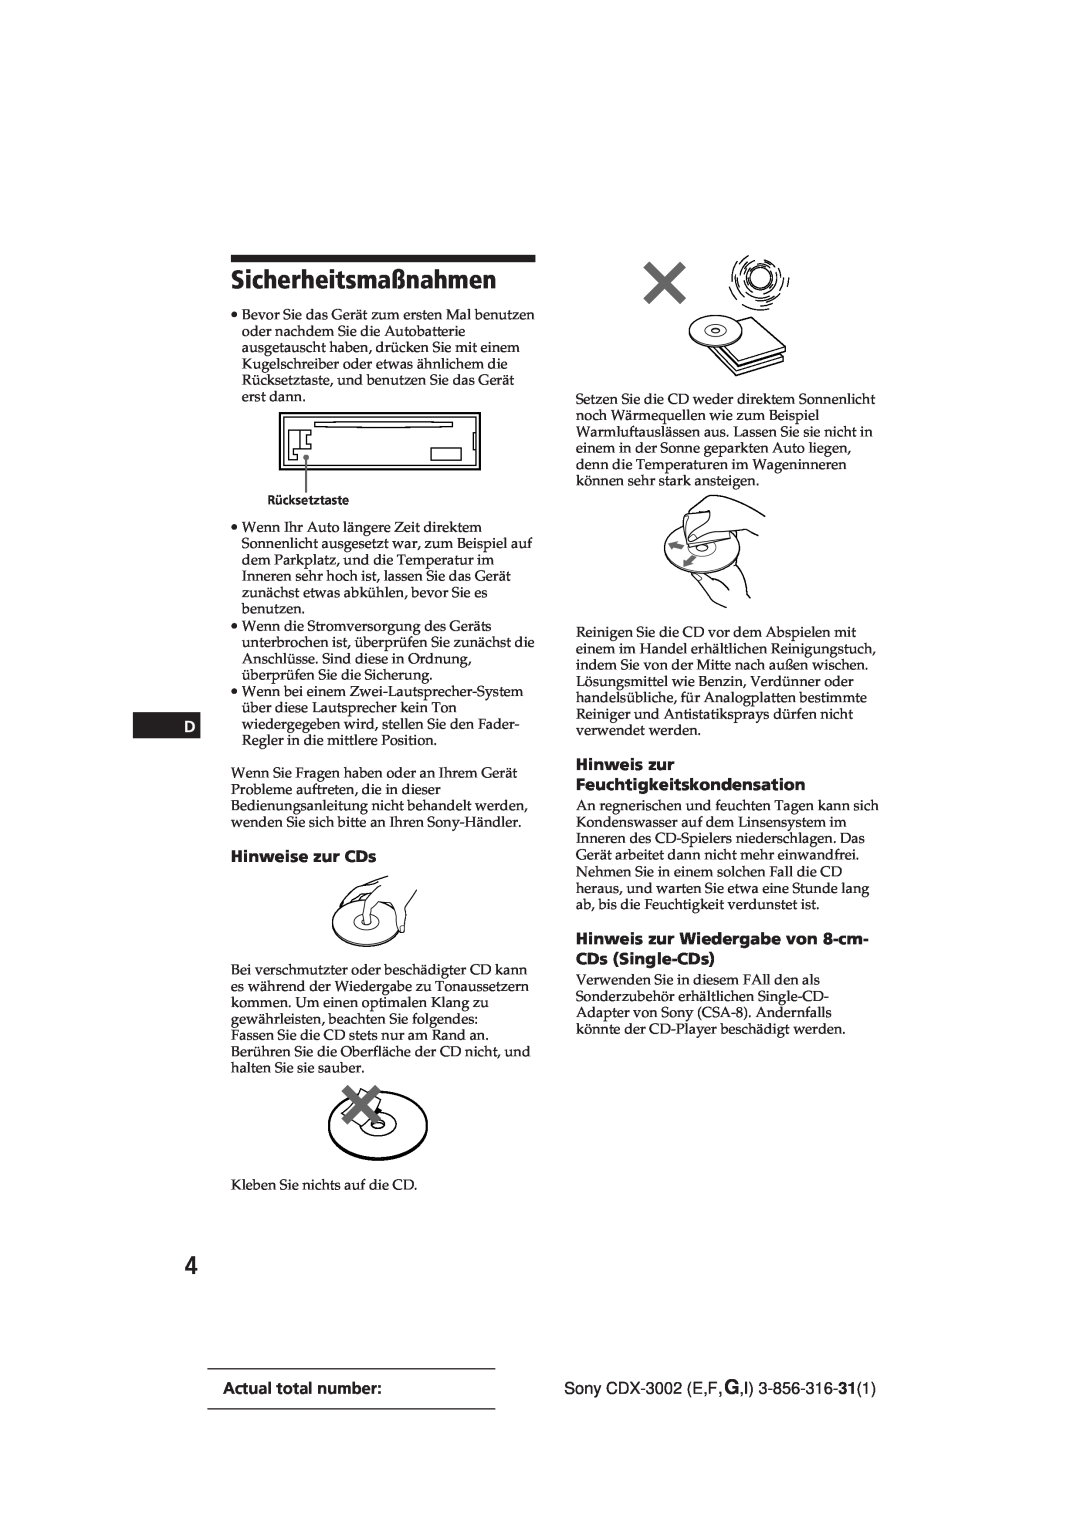 Sony CDX-3002 manual Sicherheitsmaßnahmen, Hinweise zur CDs, Hinweis zur Feuchtigkeitskondensation, Actual total number 